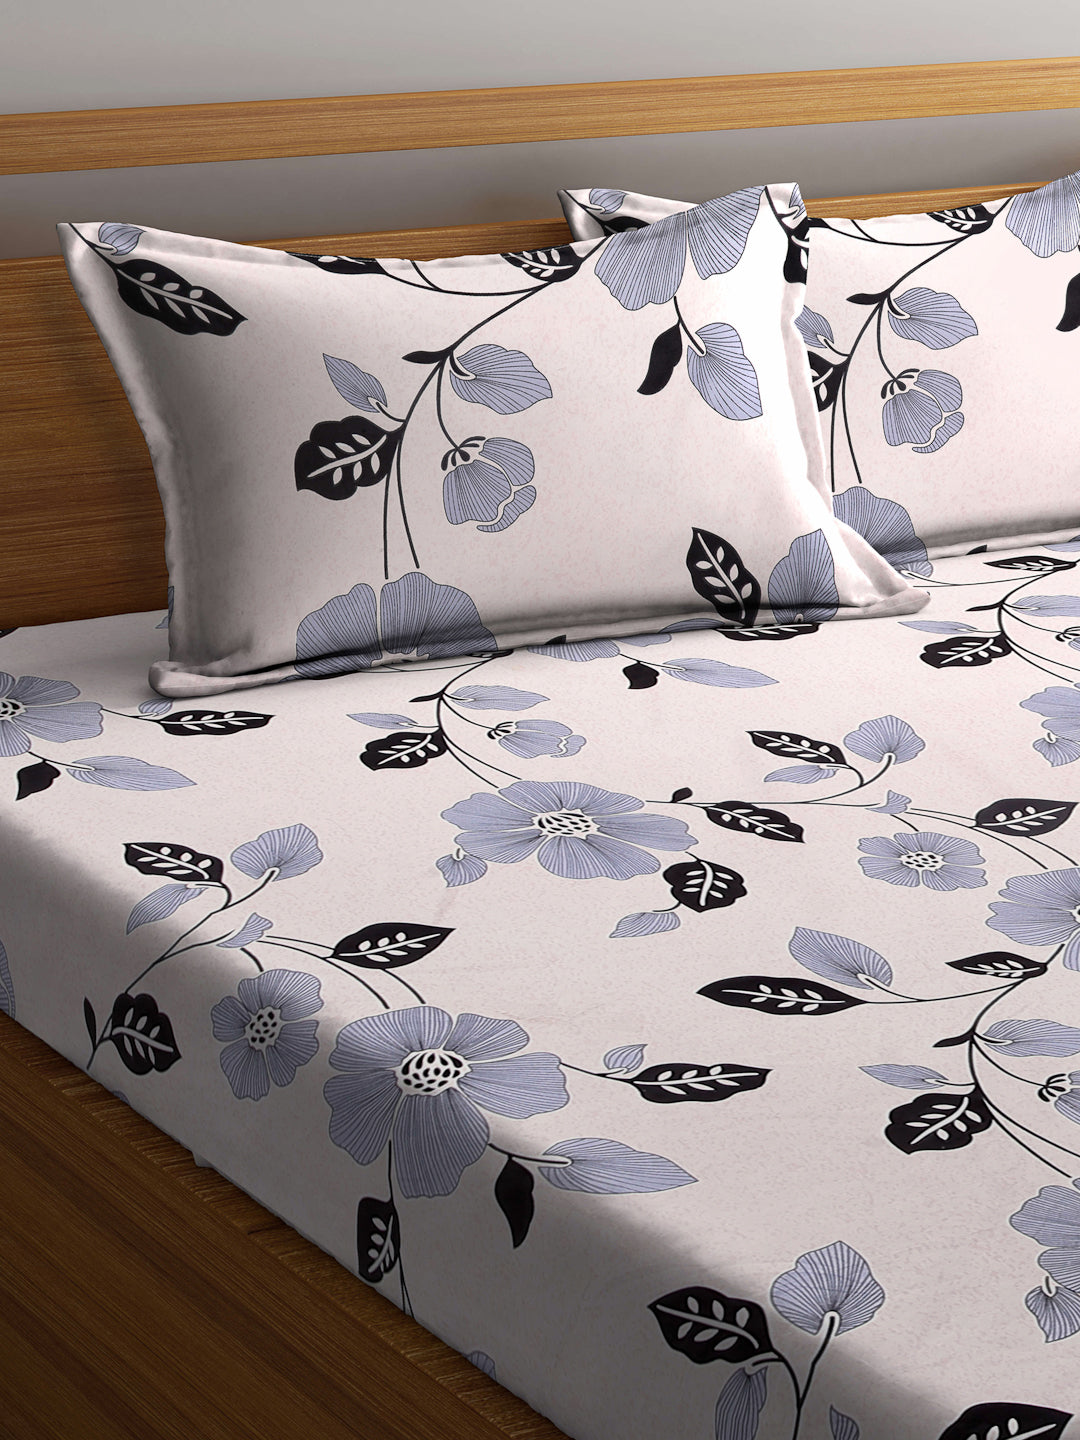 Arrabi Beige Floral TC Cotton Blend Super King Size Bedsheet with 2 Pillow Covers (270 X 260 cm)